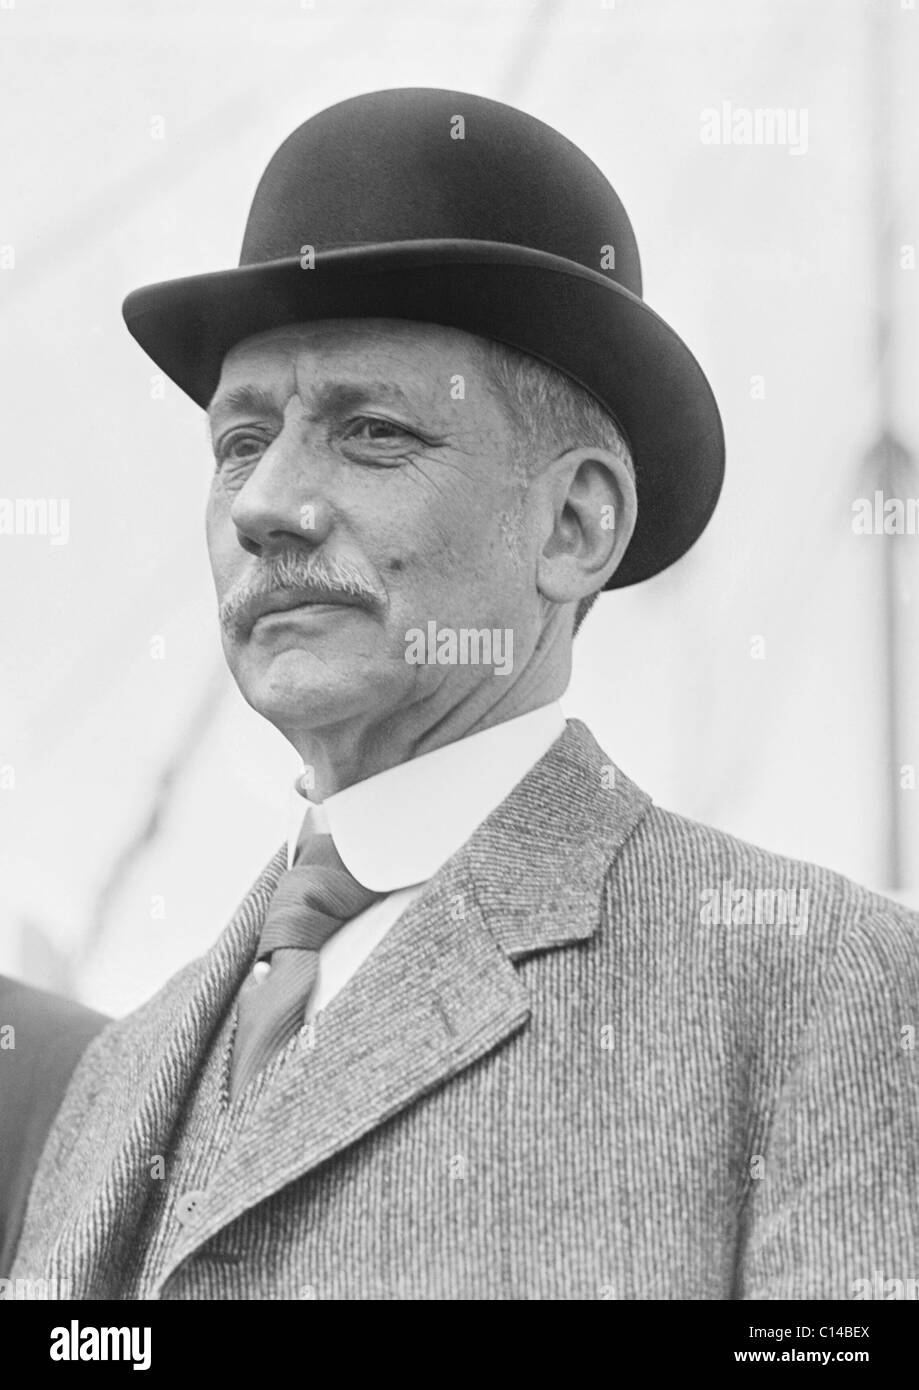 Foto d'epoca circa 1910s di noi avvocato, statista e diplomatico Elihu root (1845 - 1937) - Il vincitore del 1912 Premio Nobel per la pace. Foto Stock